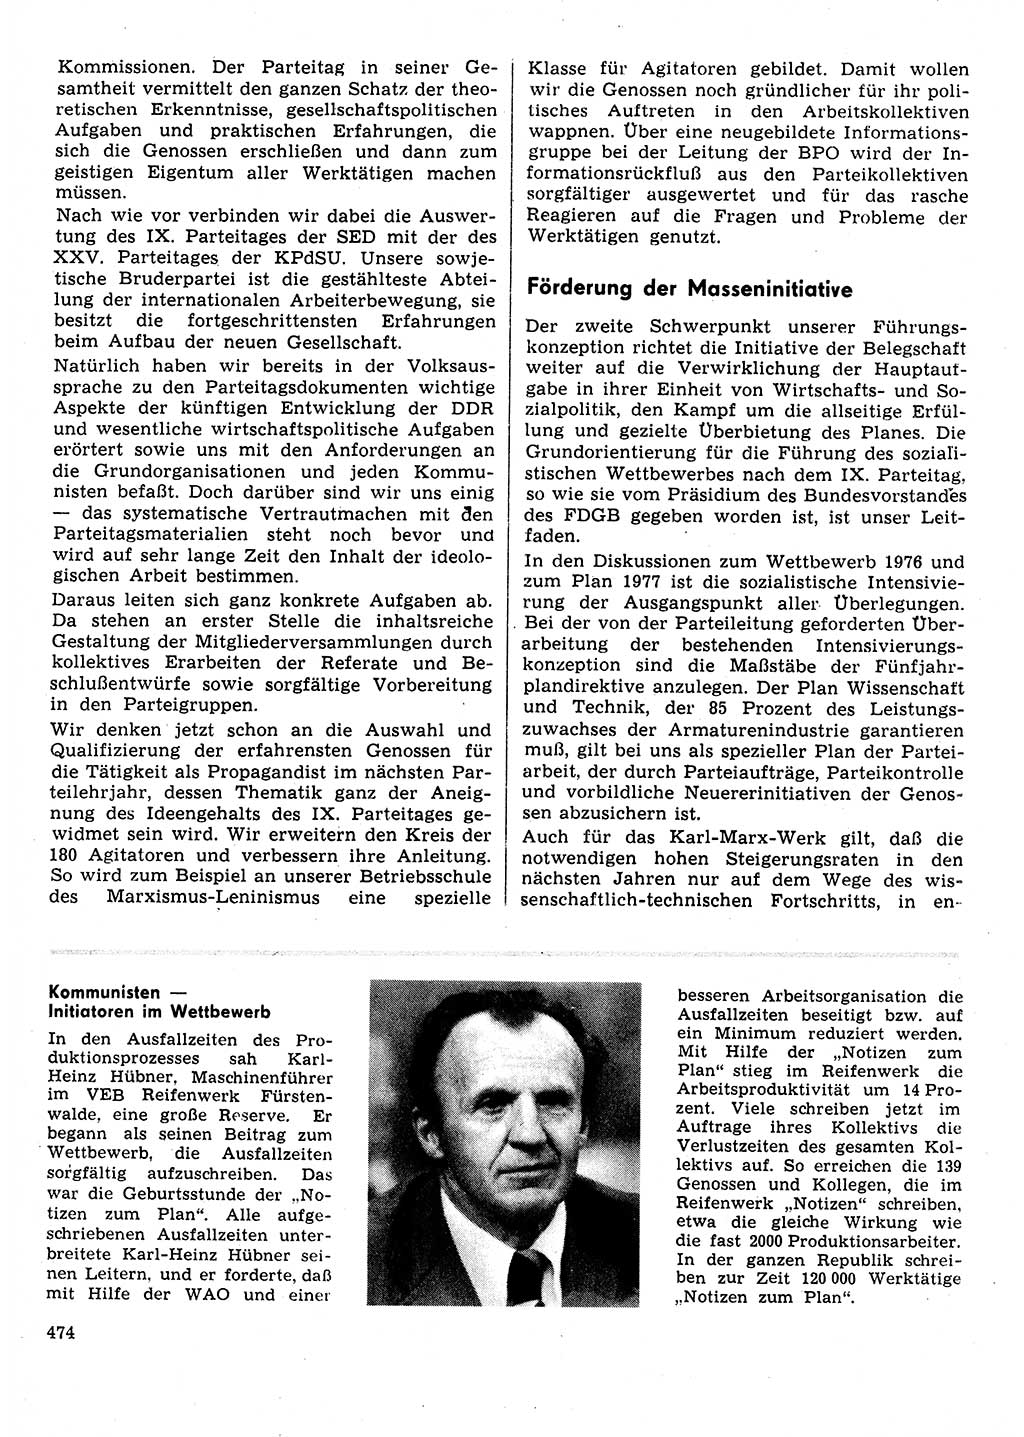 Neuer Weg (NW), Organ des Zentralkomitees (ZK) der SED (Sozialistische Einheitspartei Deutschlands) für Fragen des Parteilebens, 31. Jahrgang [Deutsche Demokratische Republik (DDR)] 1976, Seite 474 (NW ZK SED DDR 1976, S. 474)